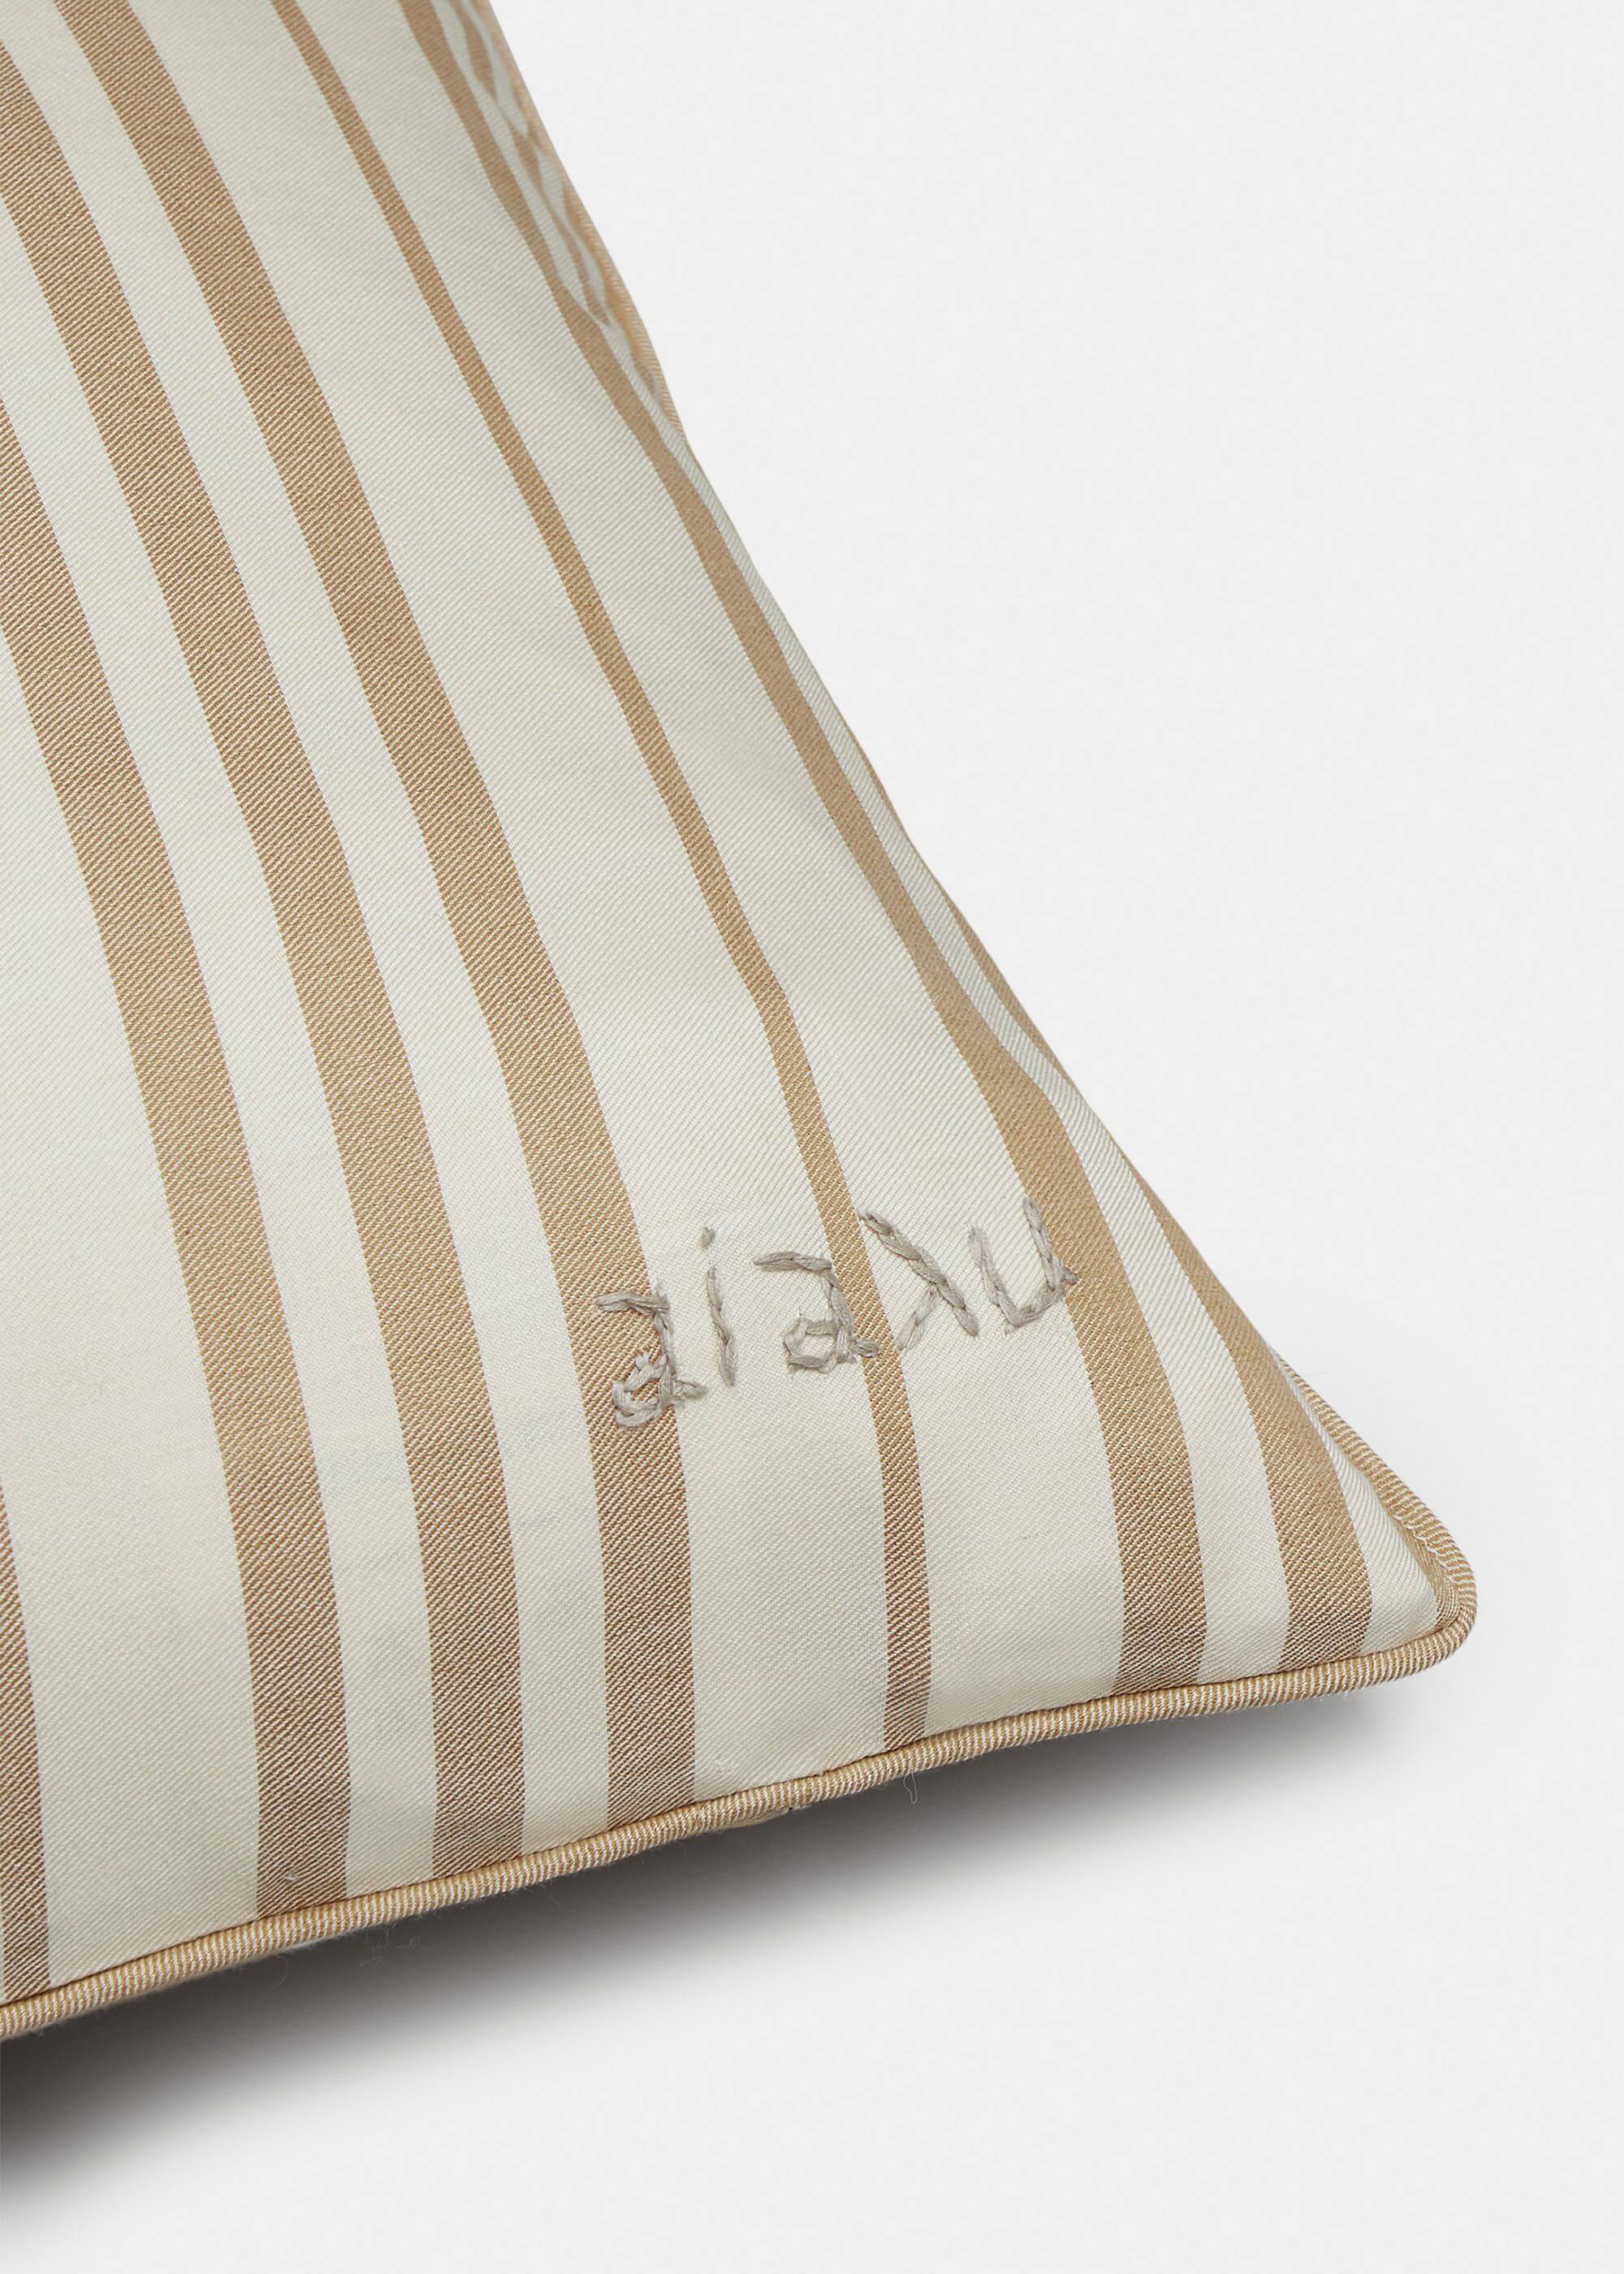 Marking Silk Pillow (40x60) / Mix Earth